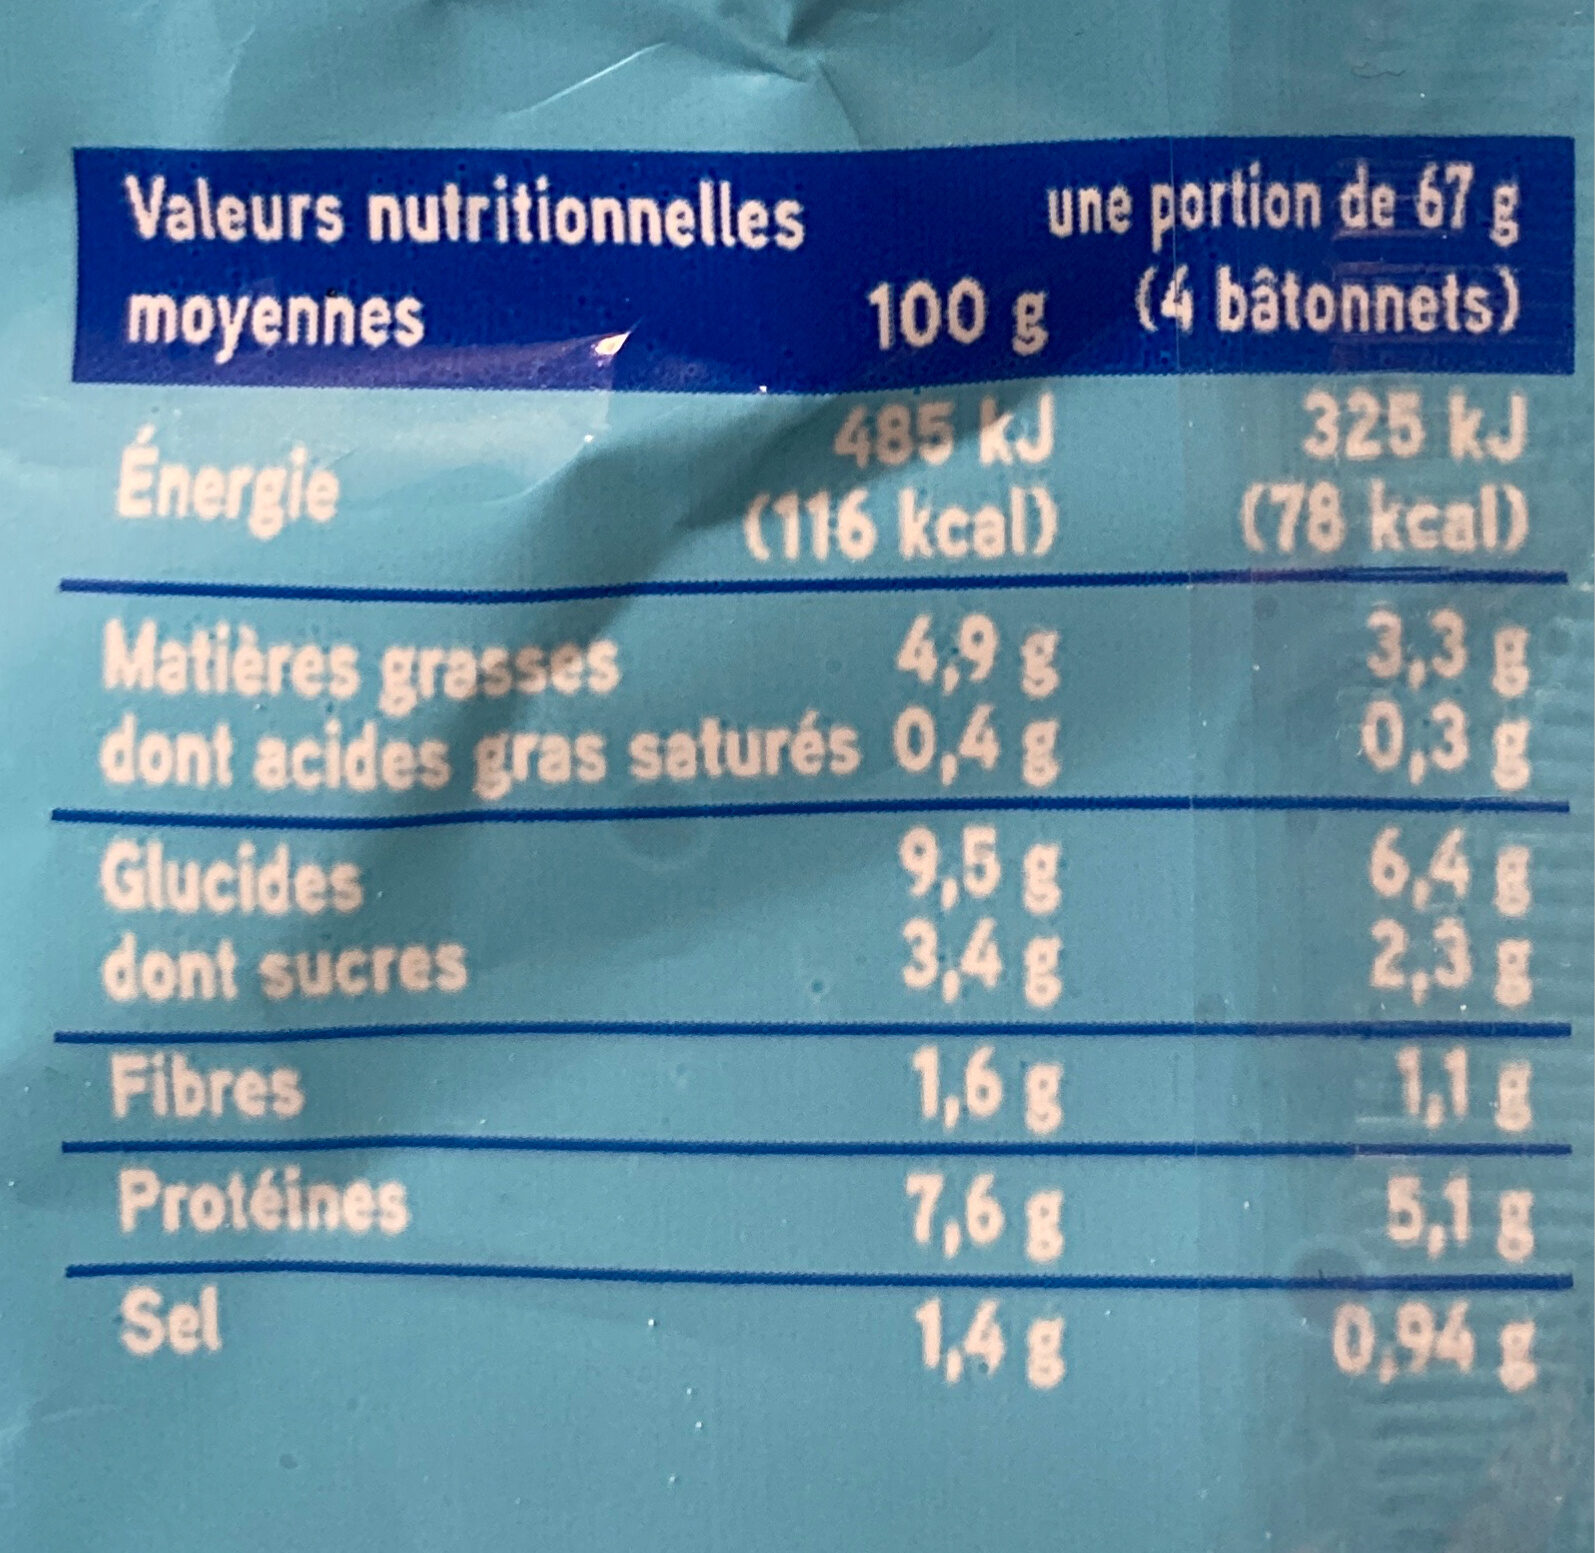 24 bâtonnets de Surimi - Nutrition facts - fr